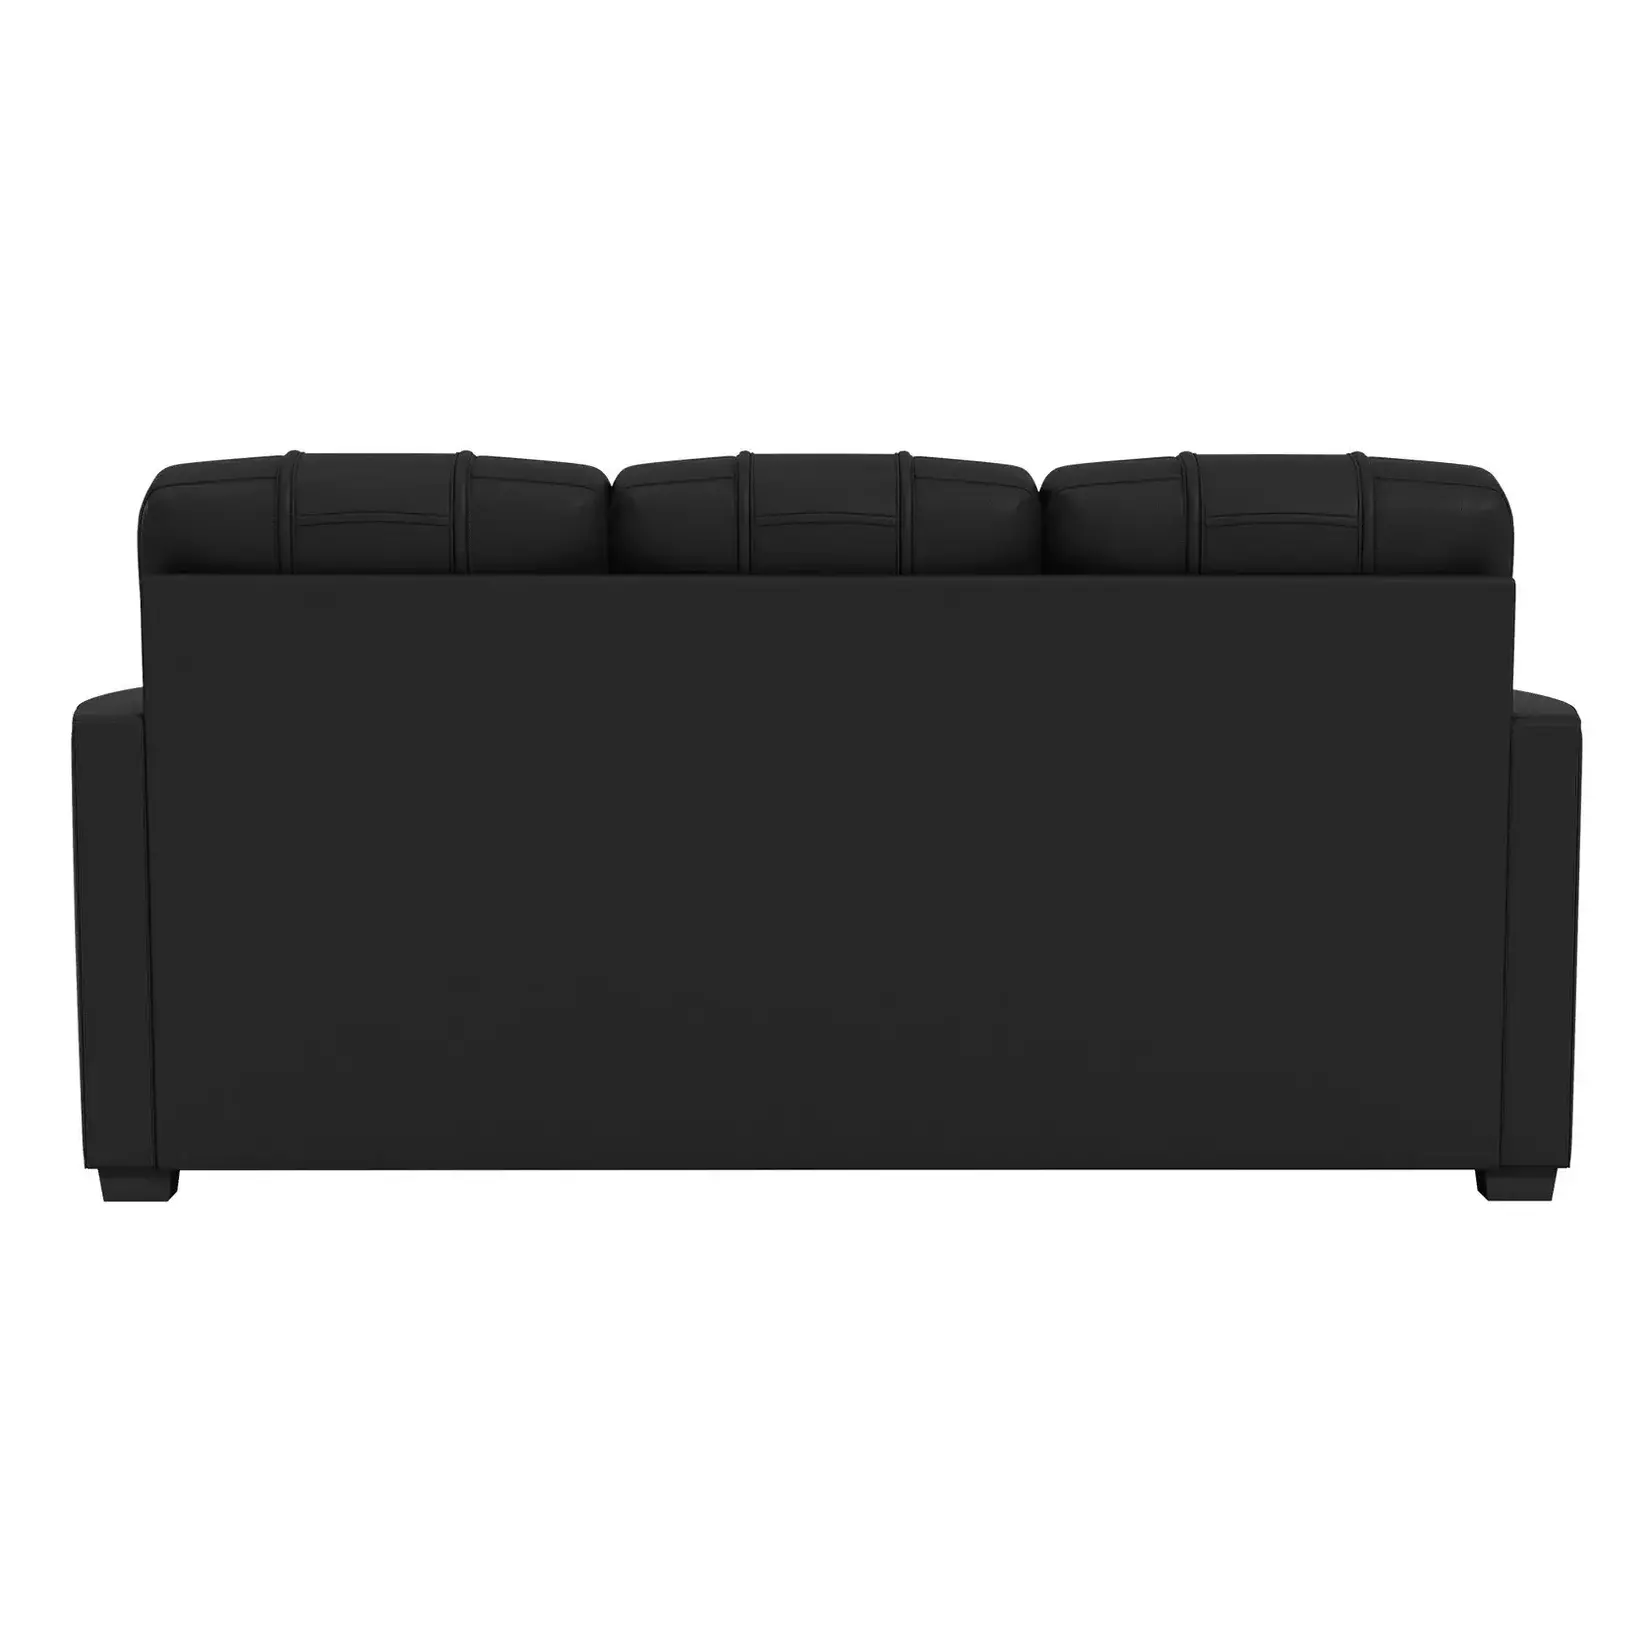 DreamSeat Stationary Sofa